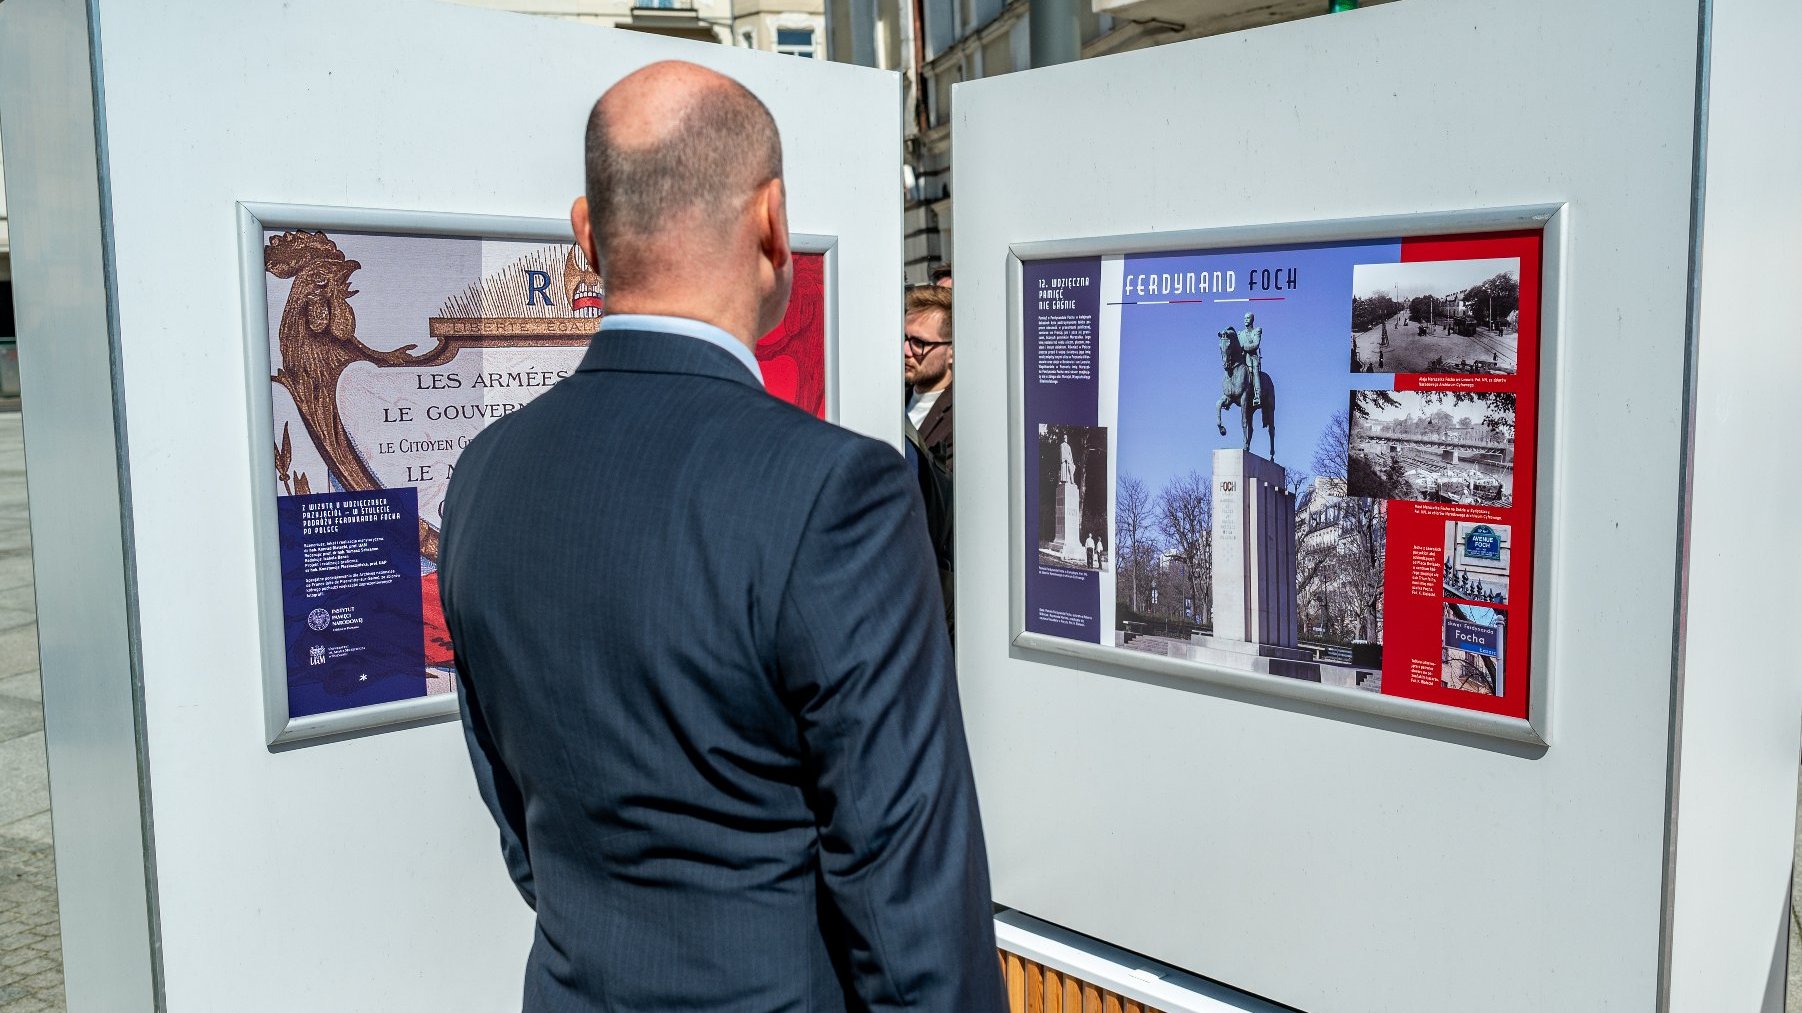 Galeria zdjęć przedstawia otwarcie wystawy o marszałku Fochu. Na fotografiach widać ludzi oglądającyh ekspozycję oraz plansze wystawy z tekstem i zdjęciami.